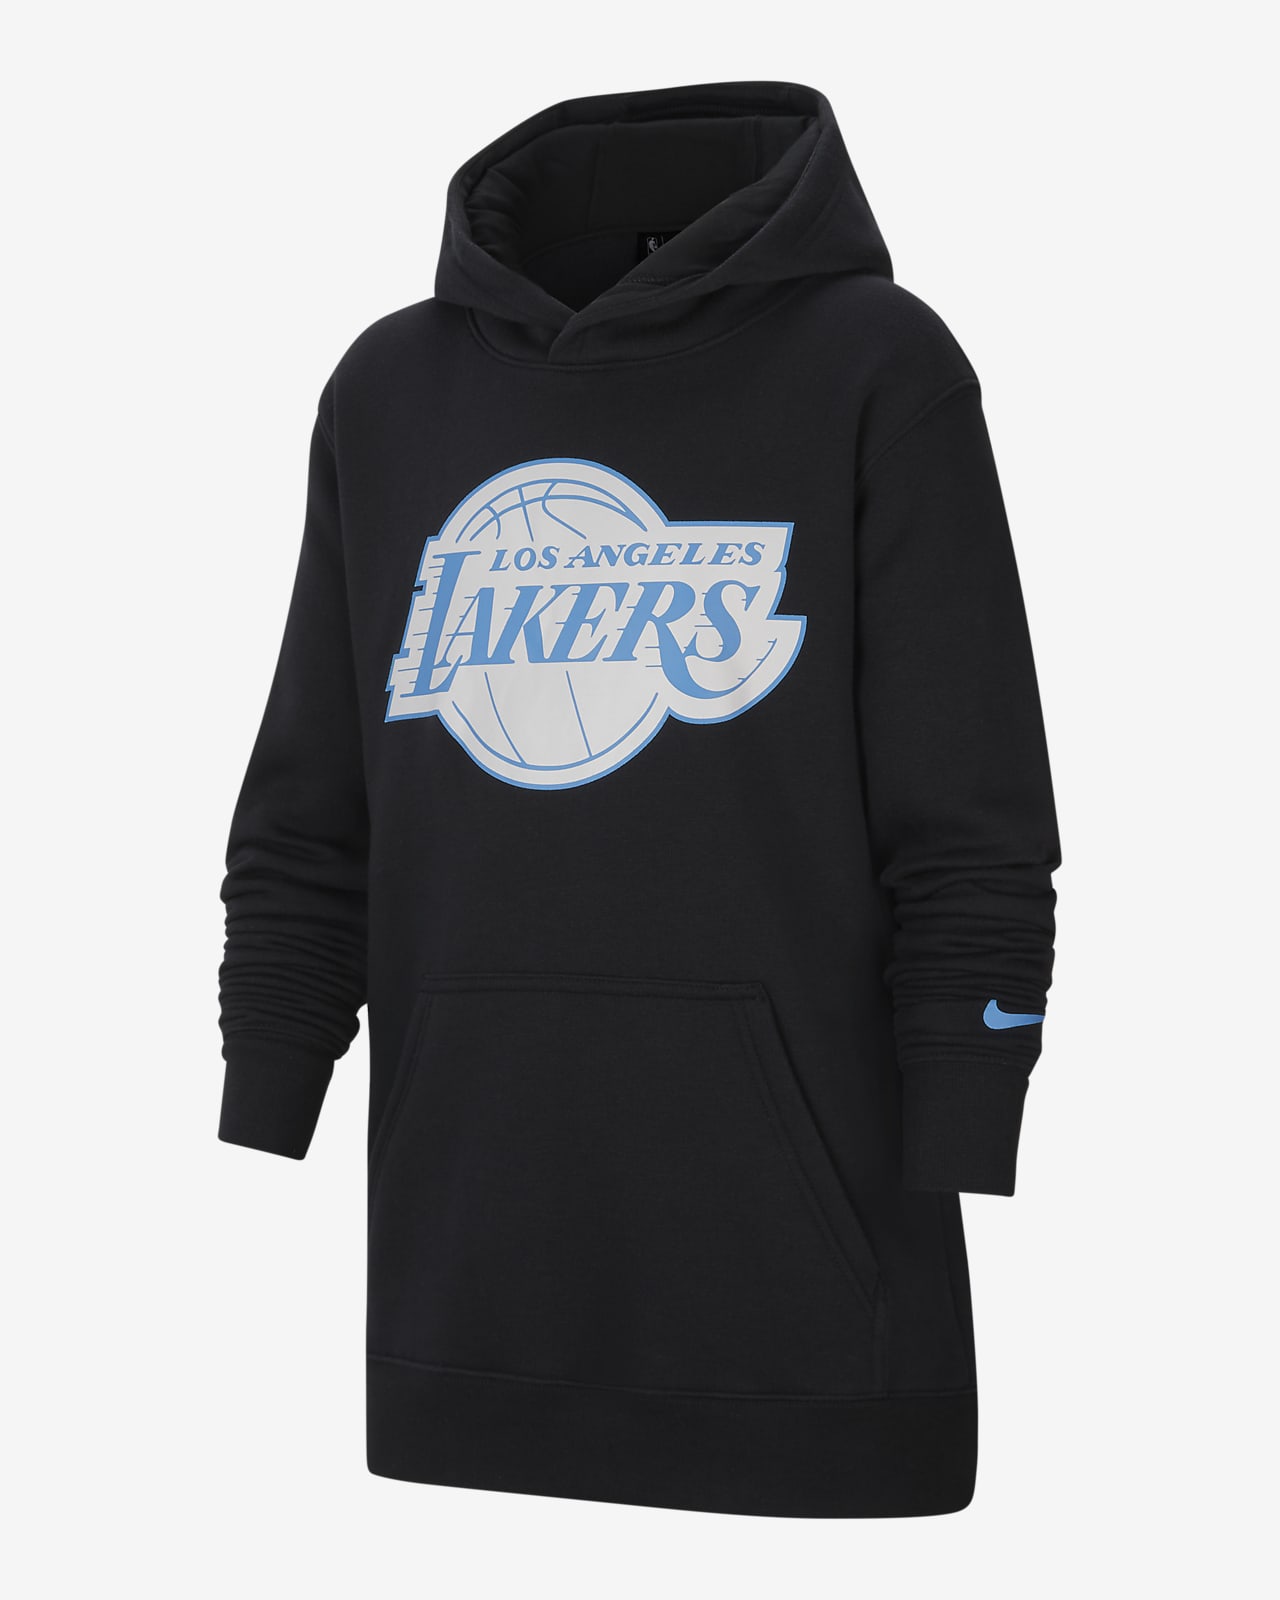 lakers hoodie for kids